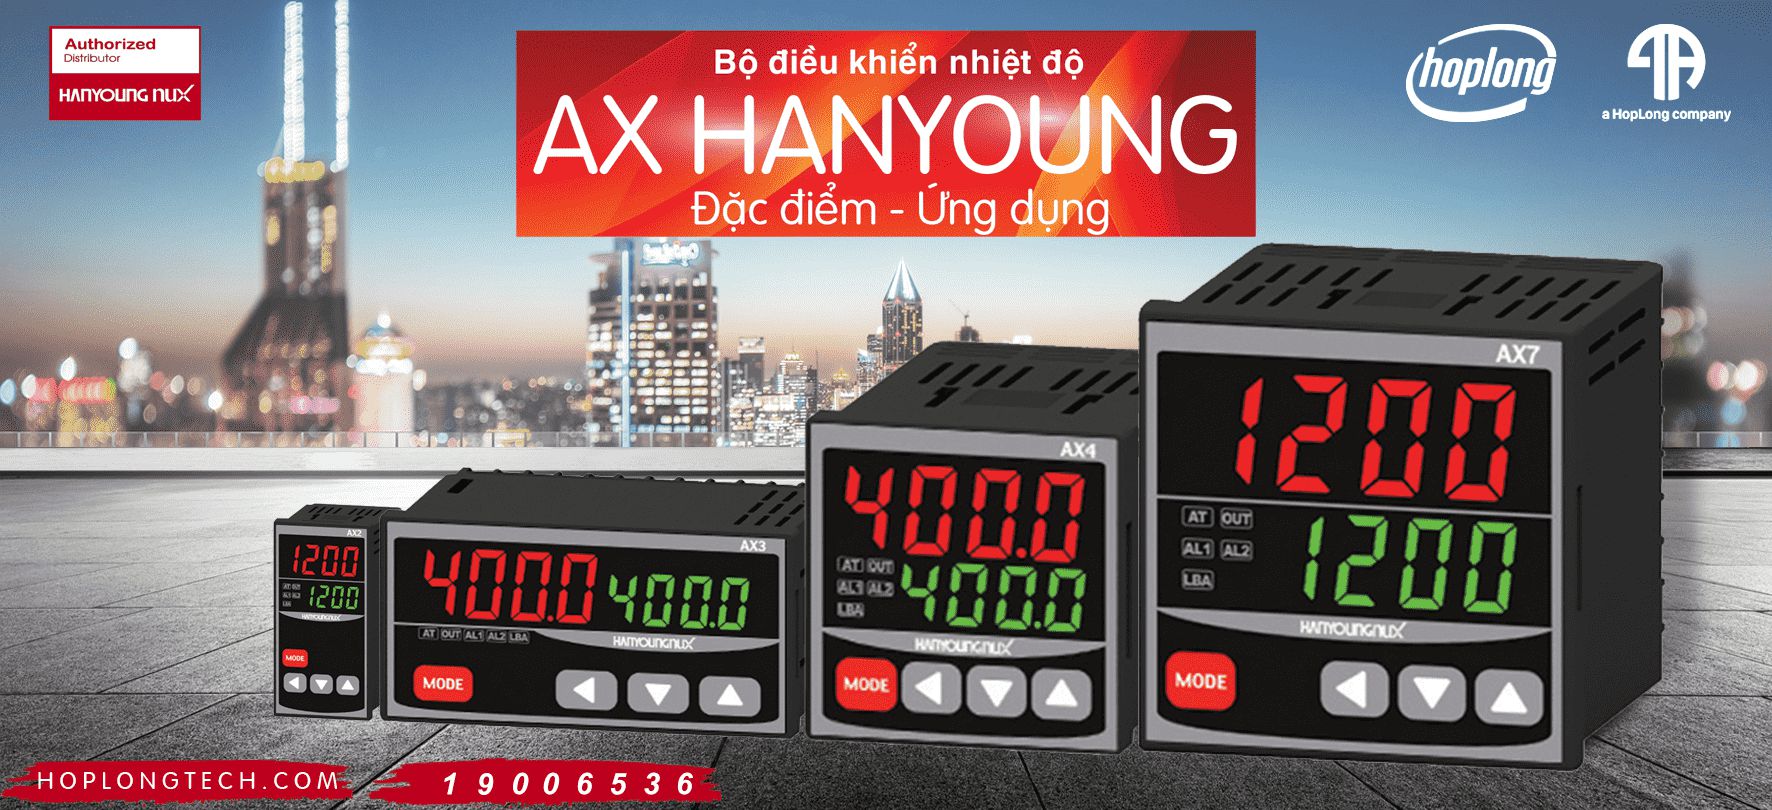 Đặc điểm và ứng dụng của bộ điều khiển nhiệt độ AX Hanyoung